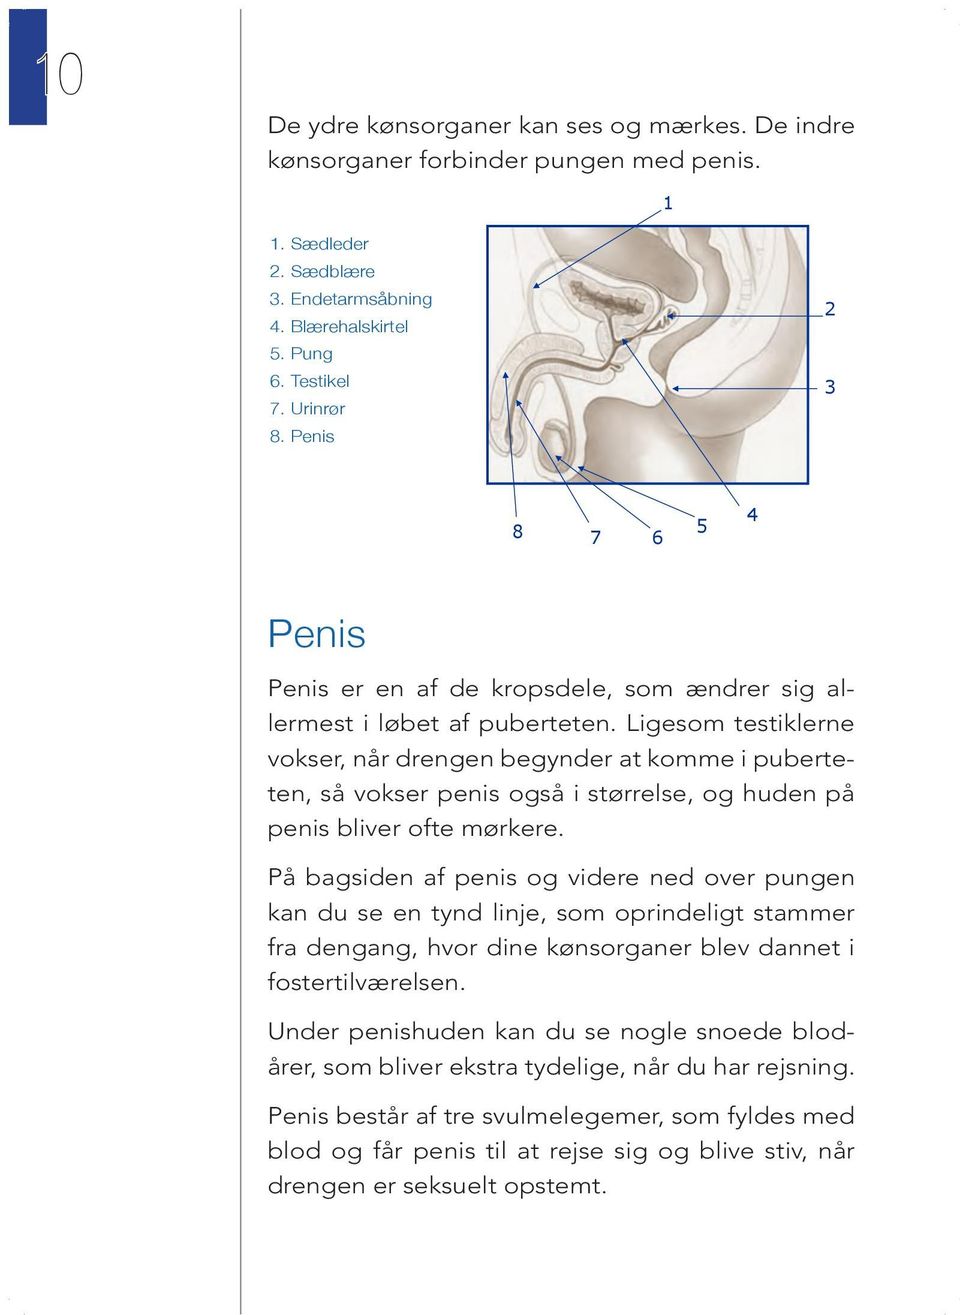 Ligesom testiklerne vokser, når drengen begynder at komme i puberteten, så vokser penis også i størrelse, og huden på penis bliver ofte mørkere.